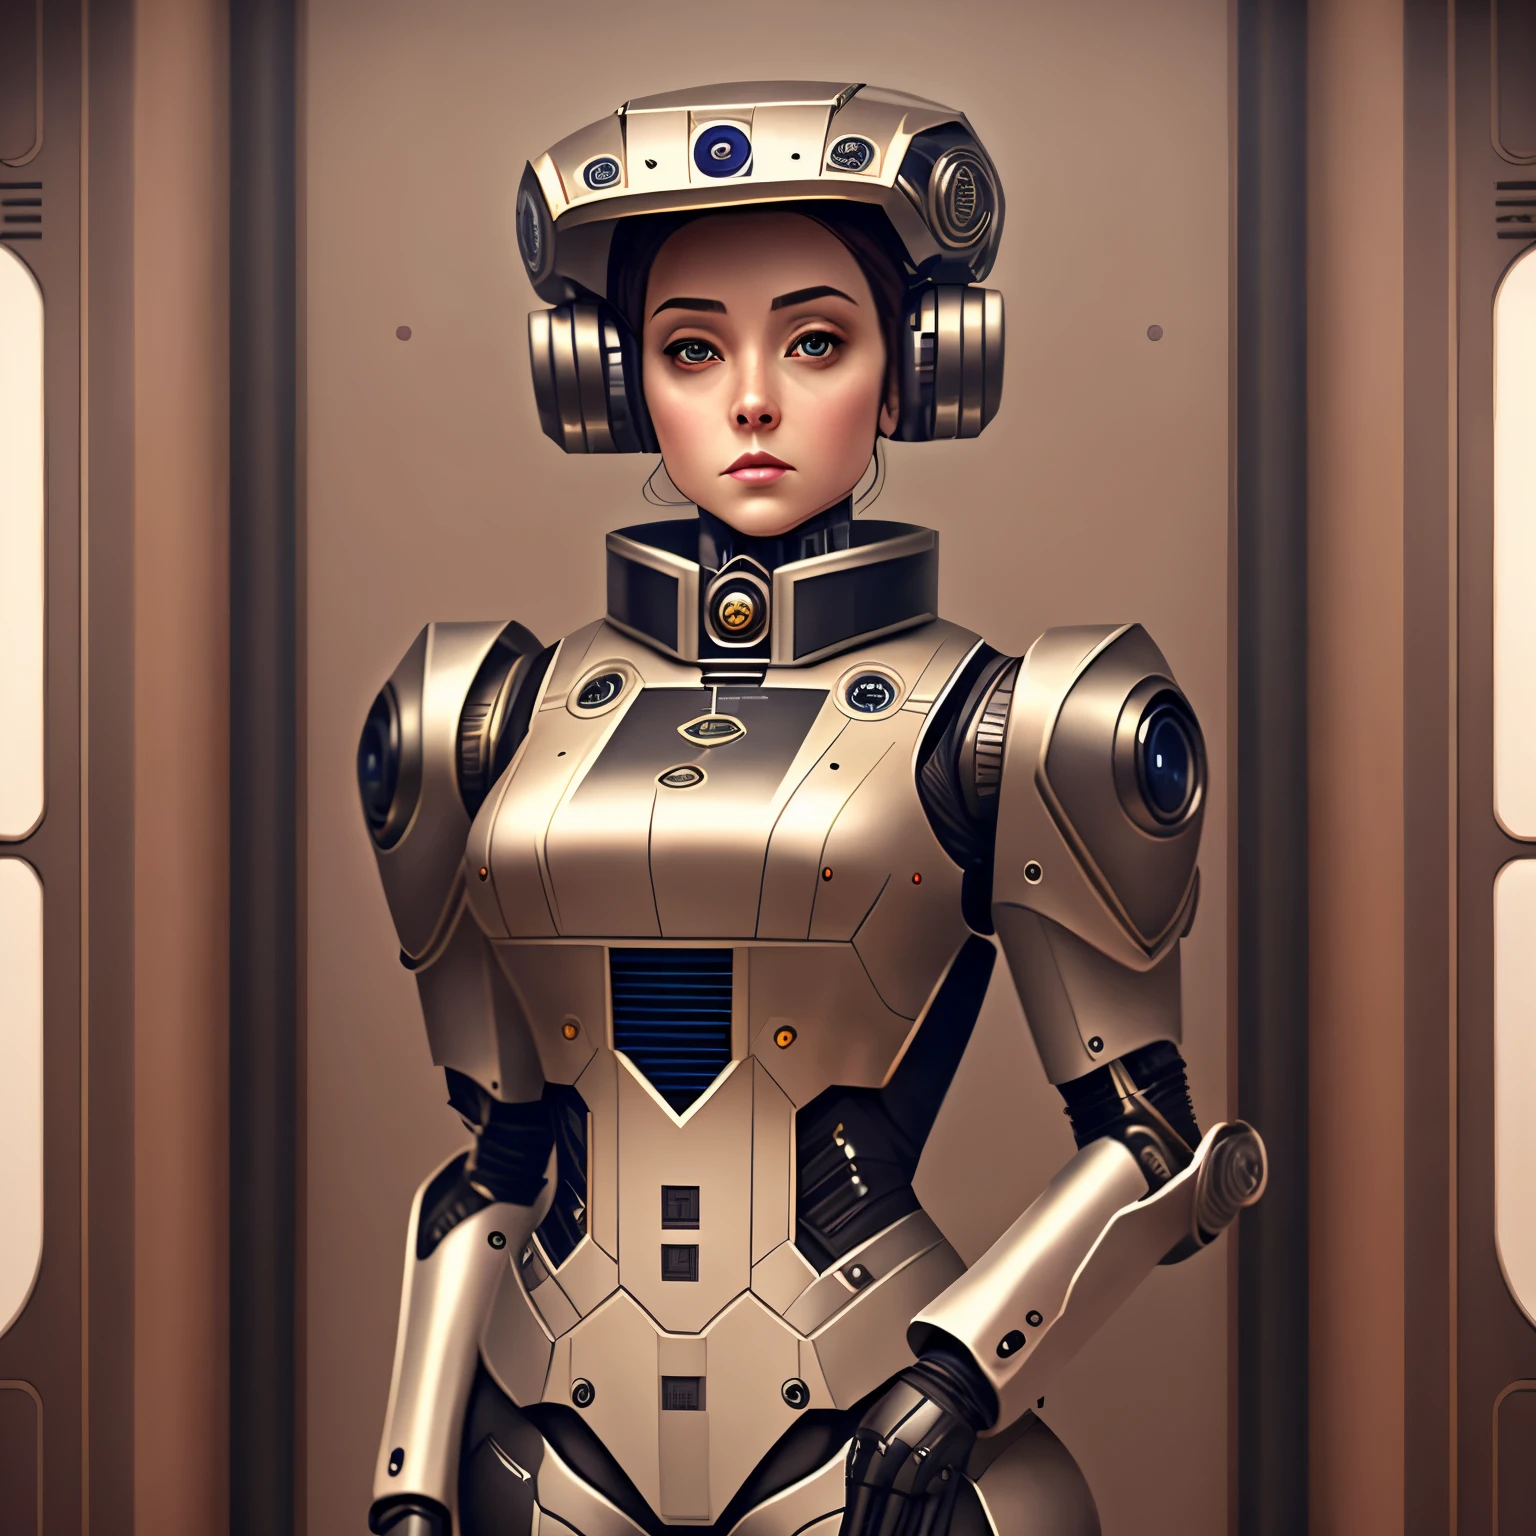 หุ่นยนต์ผู้หญิงในชุดบัตเลอร์